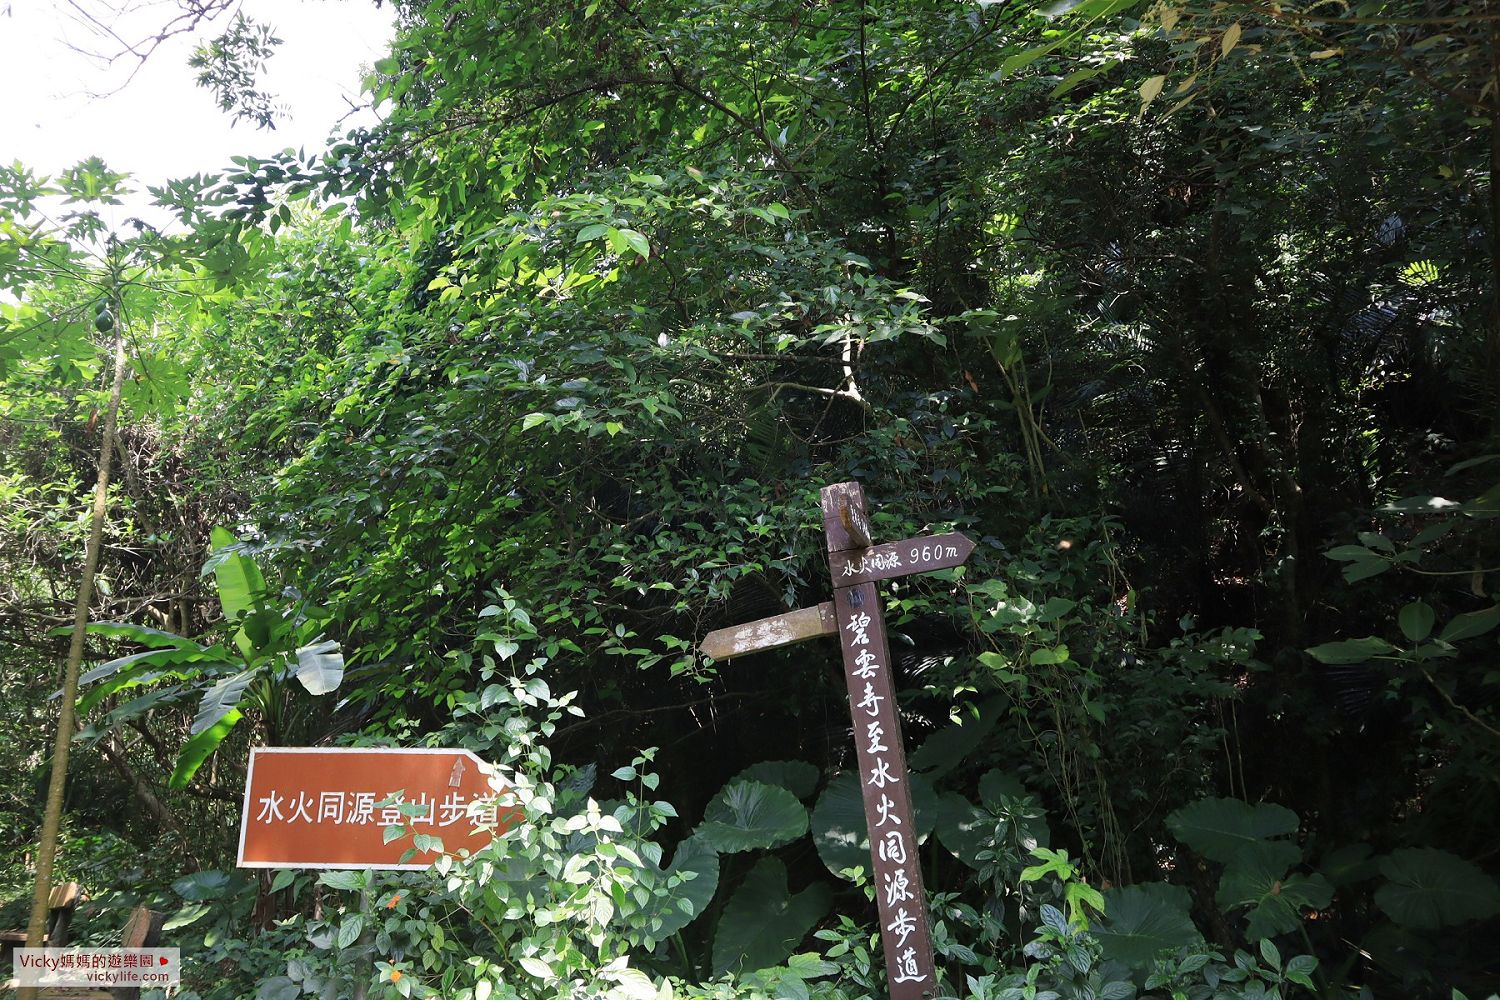 台南親子登山步道︱碧雲火泉步道、水火同源登山步道、碧雲寺登山步道：一條步道竟然有三個名稱，而且還連結了2個百年景點哩